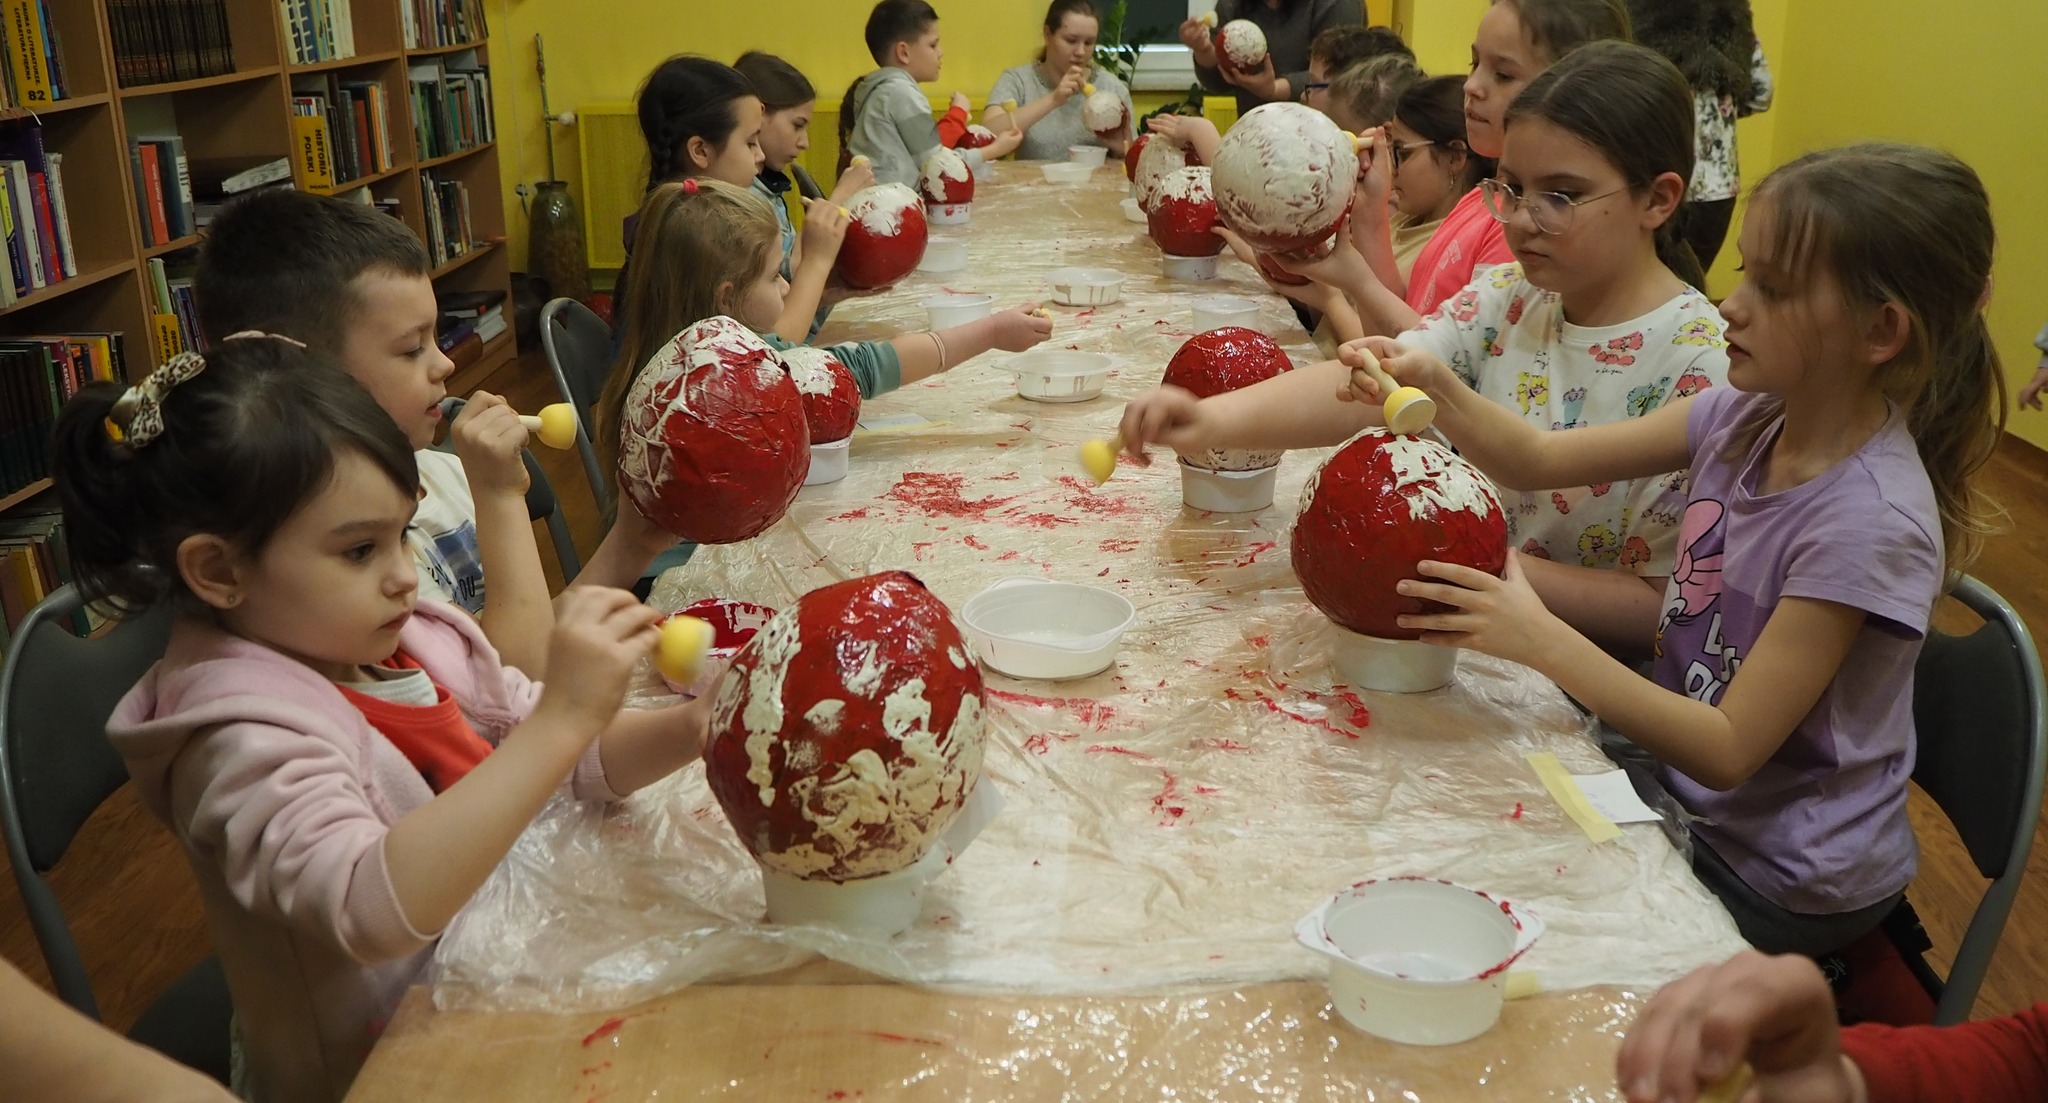 dzieci przy stole malują czerwone kule na biało